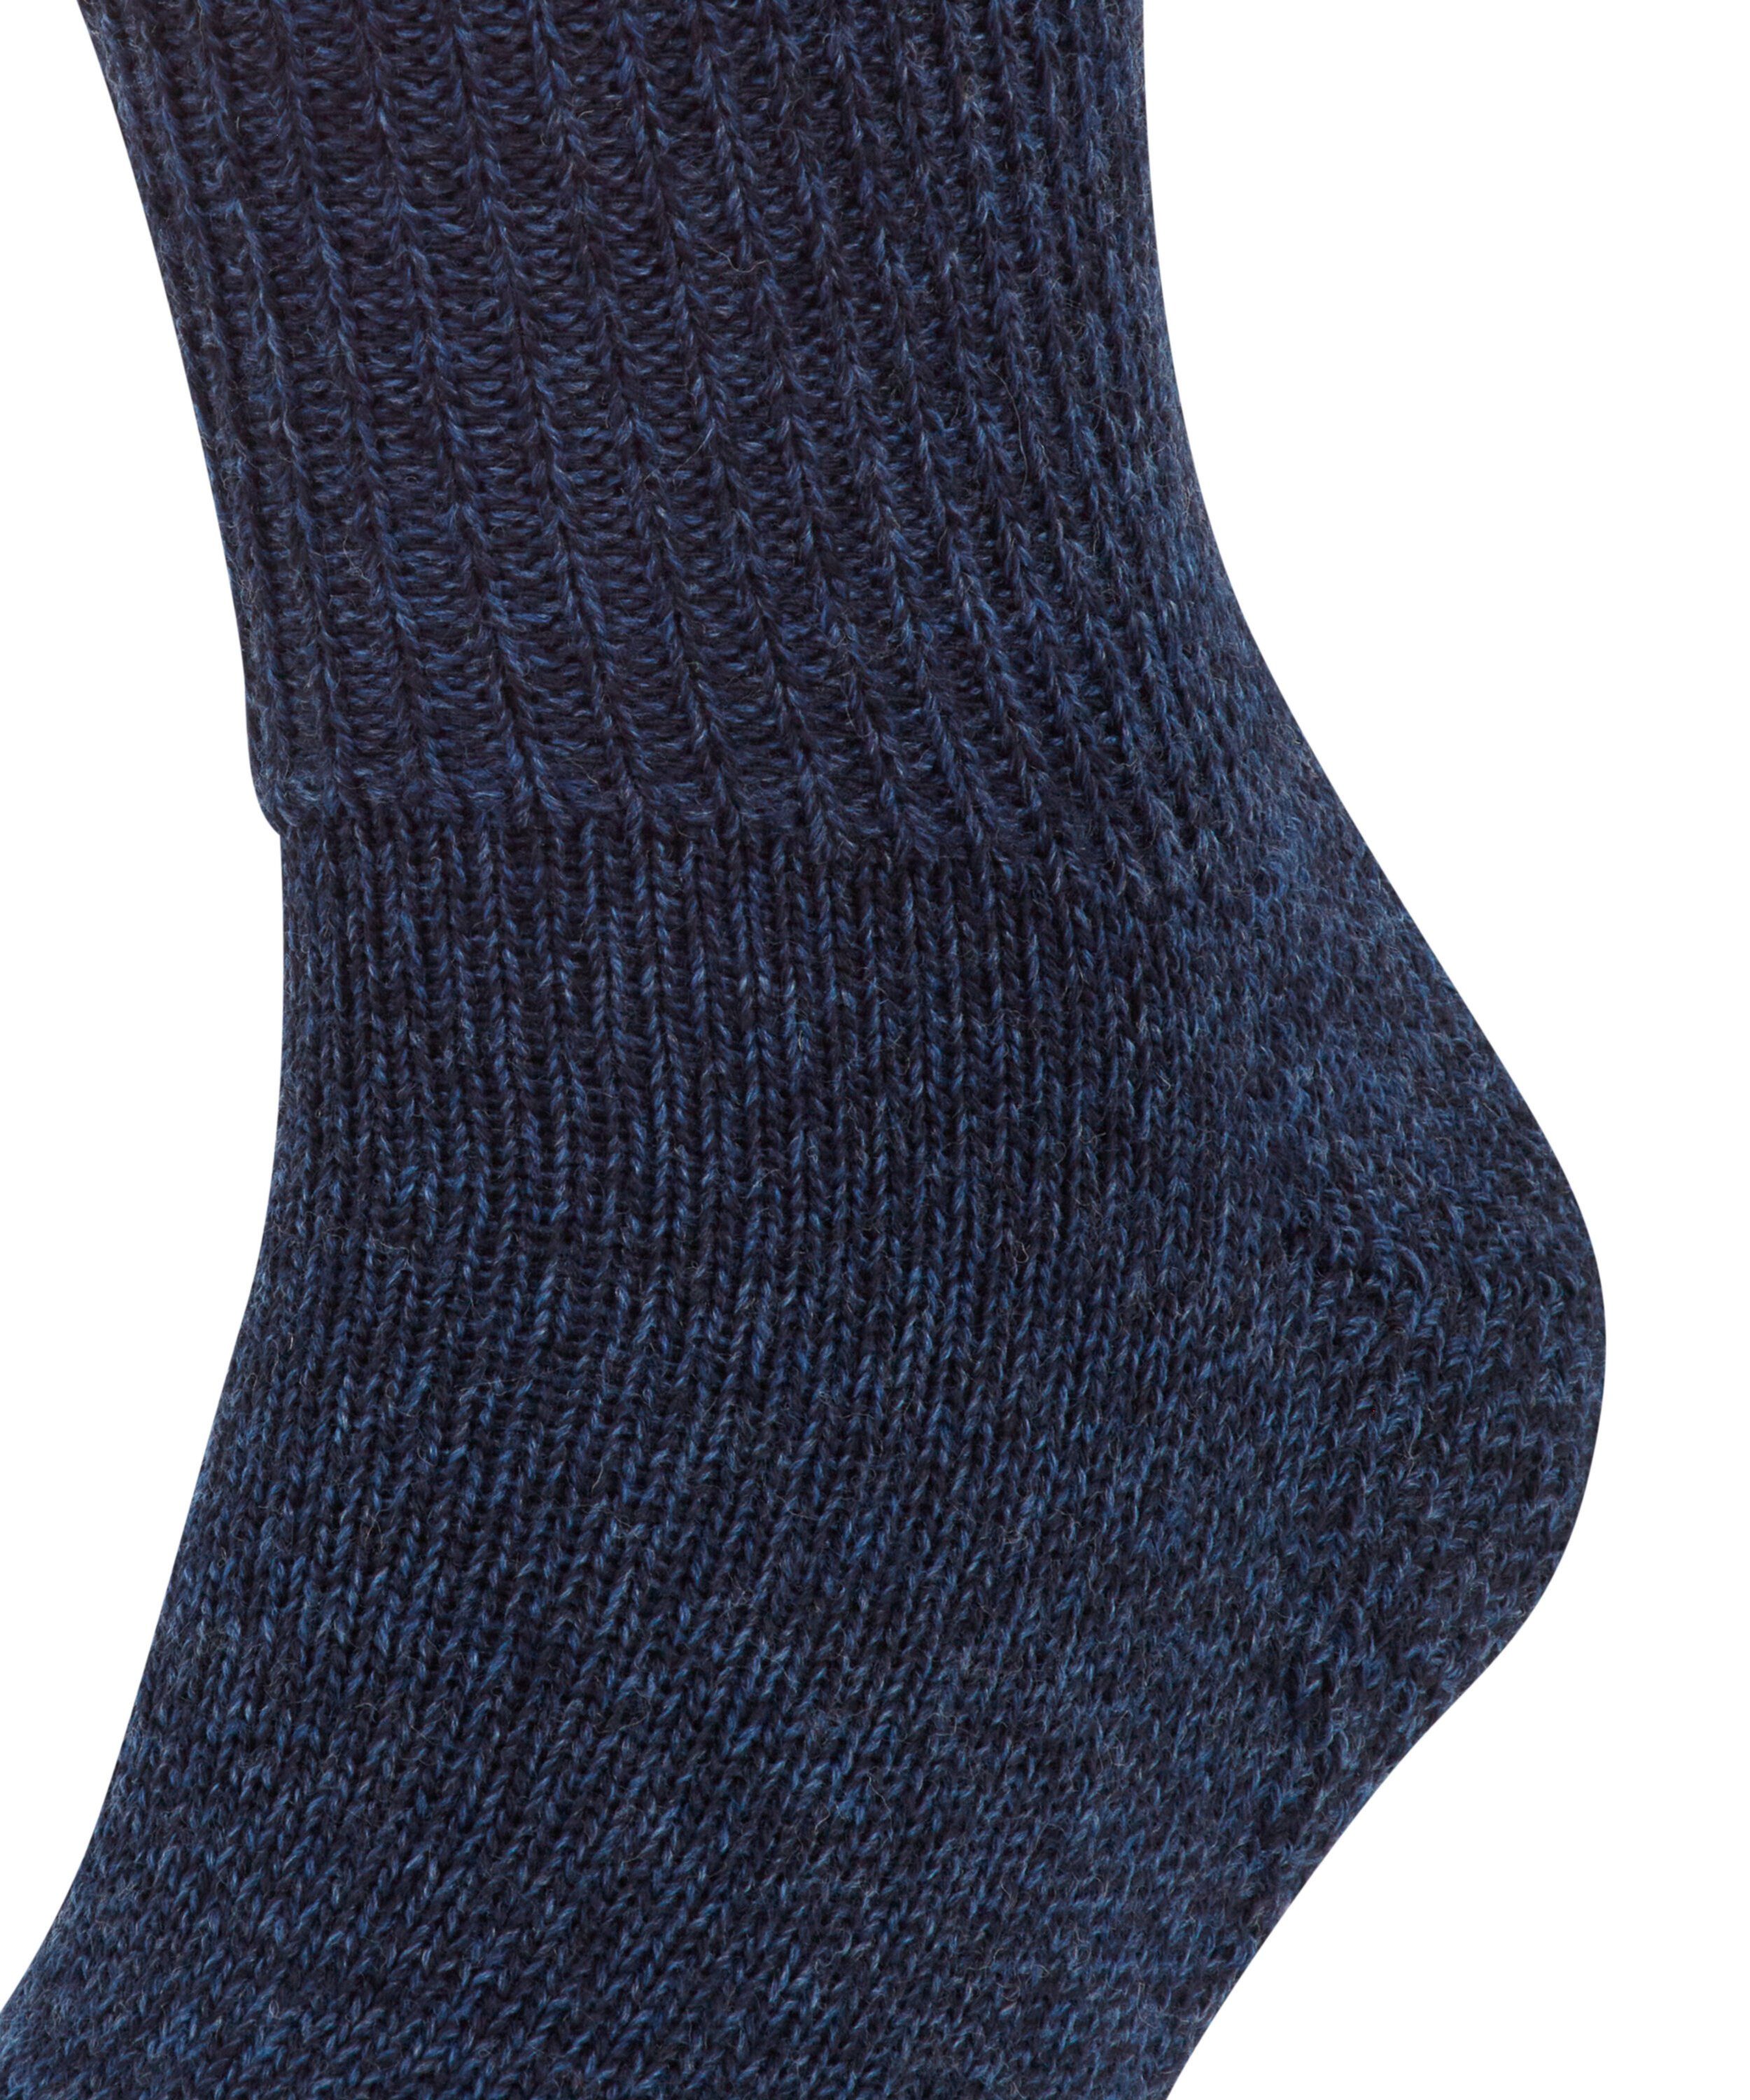 FALKE Socken (6670) Walkie Ergo jeans (1-Paar)